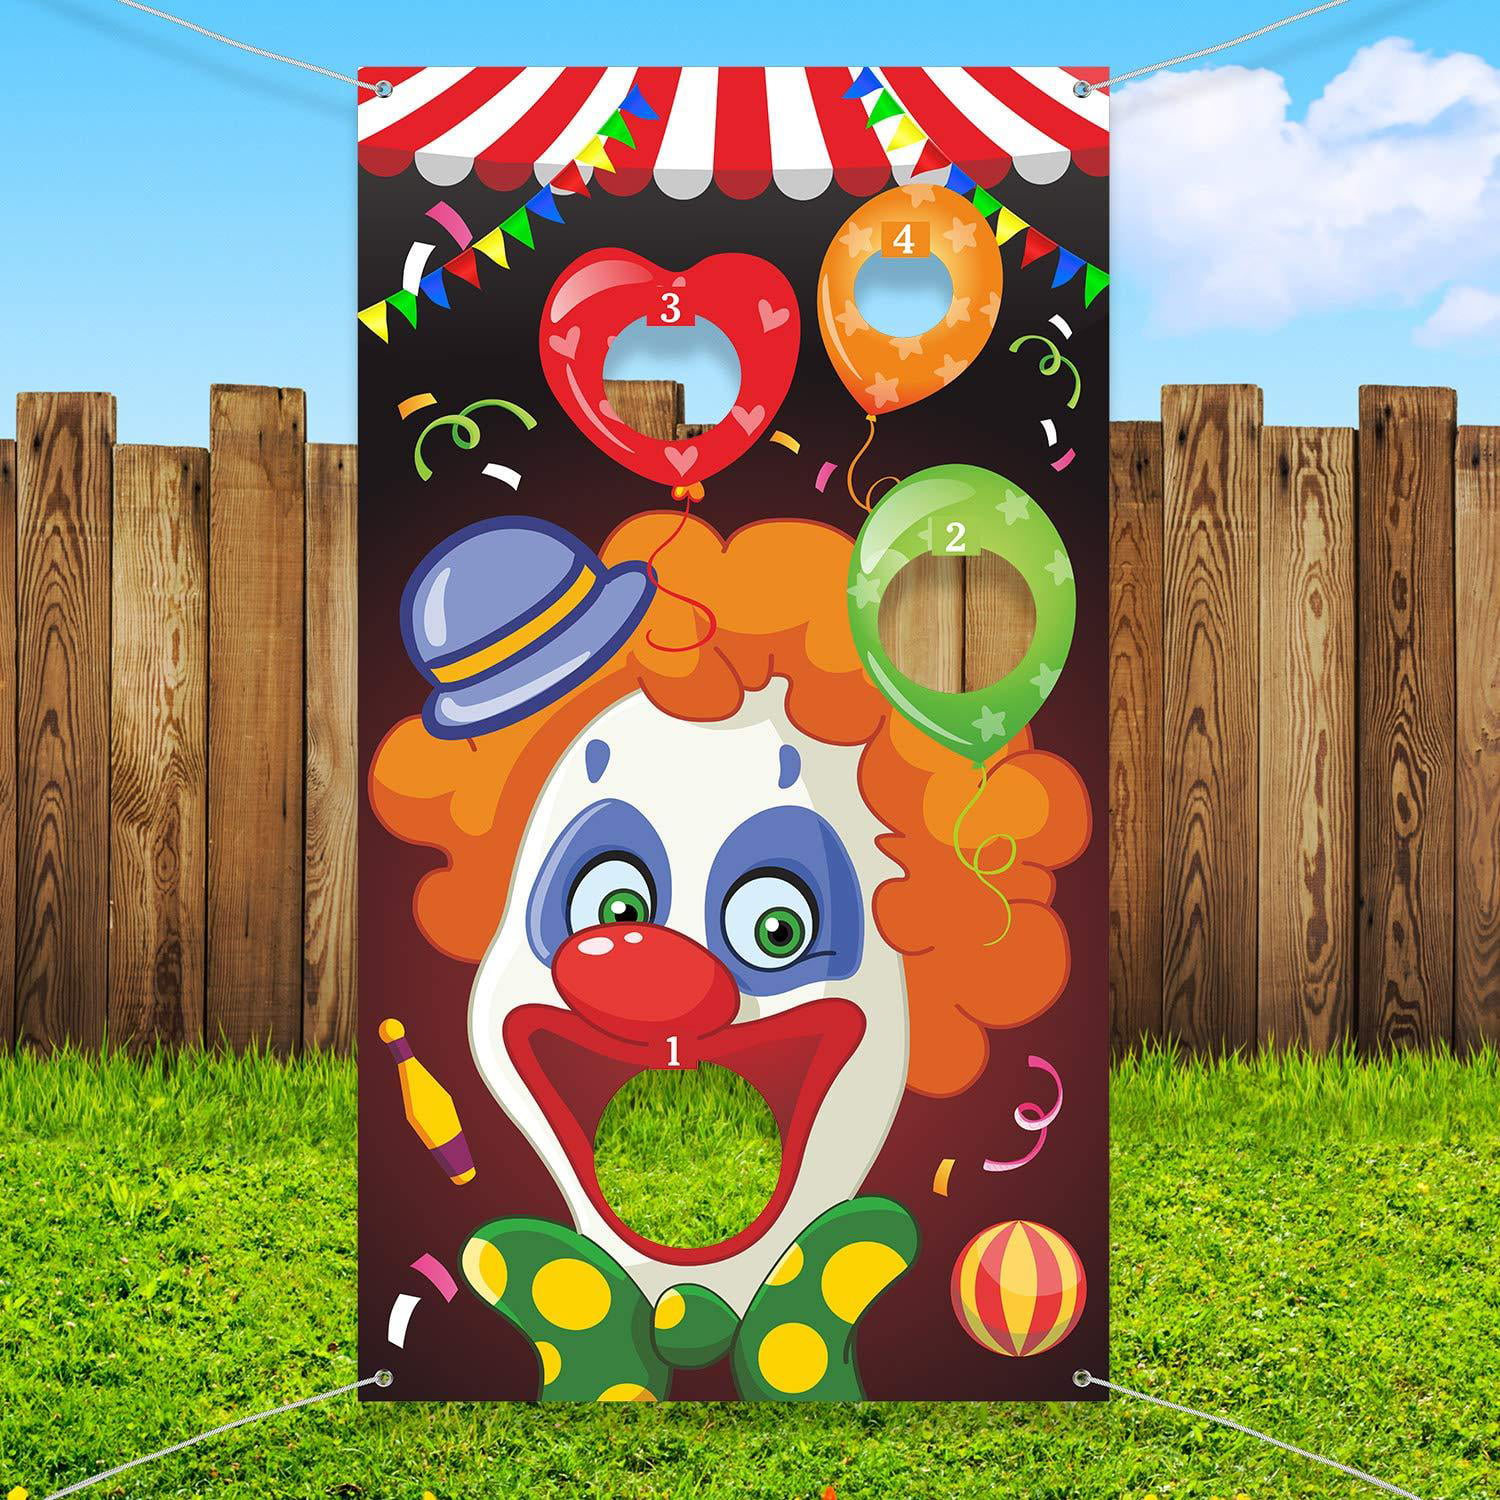 Circus Fornitori per Bambini e Adulti Grandi Decorazioni di Carnevale WENTS Carnival Toss Giochi Clown Banner con 3 Sacchetti di Fagioli Circus Bean Bag Toss Game per attività di Carnevale Party 